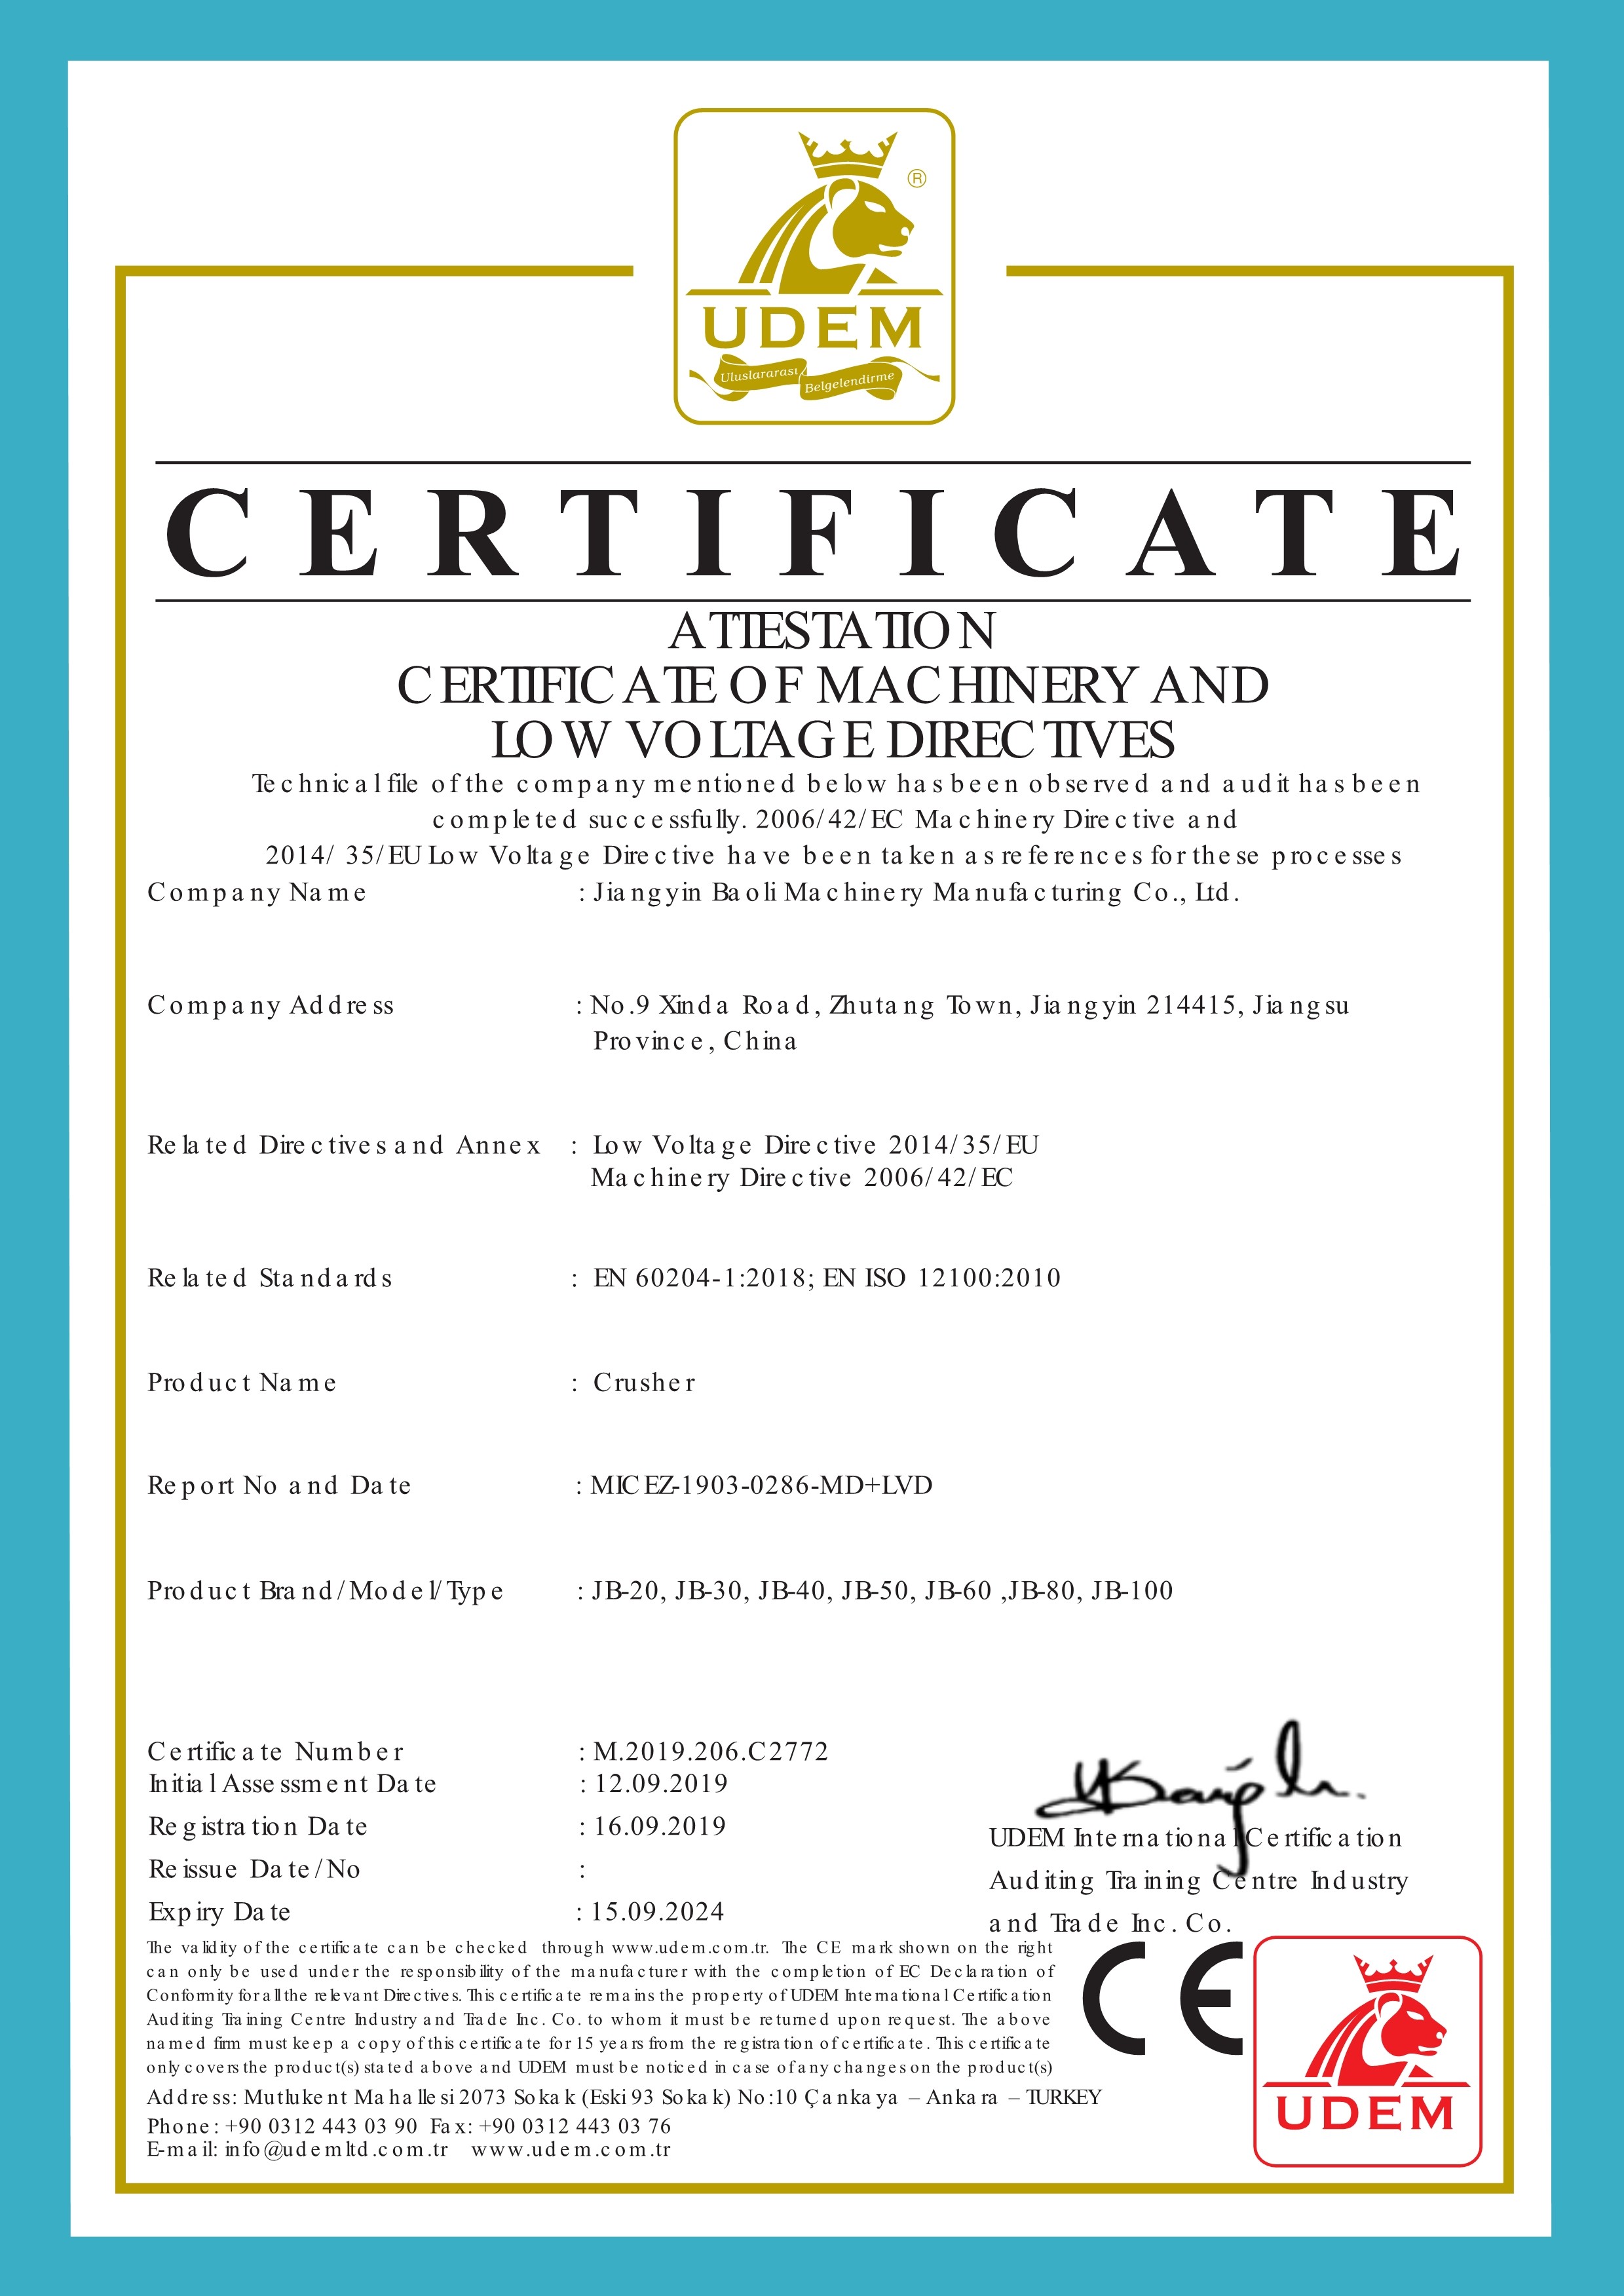 China Jiangyin Baoli Machinery Manufacturing Co., Ltd. Certificaten